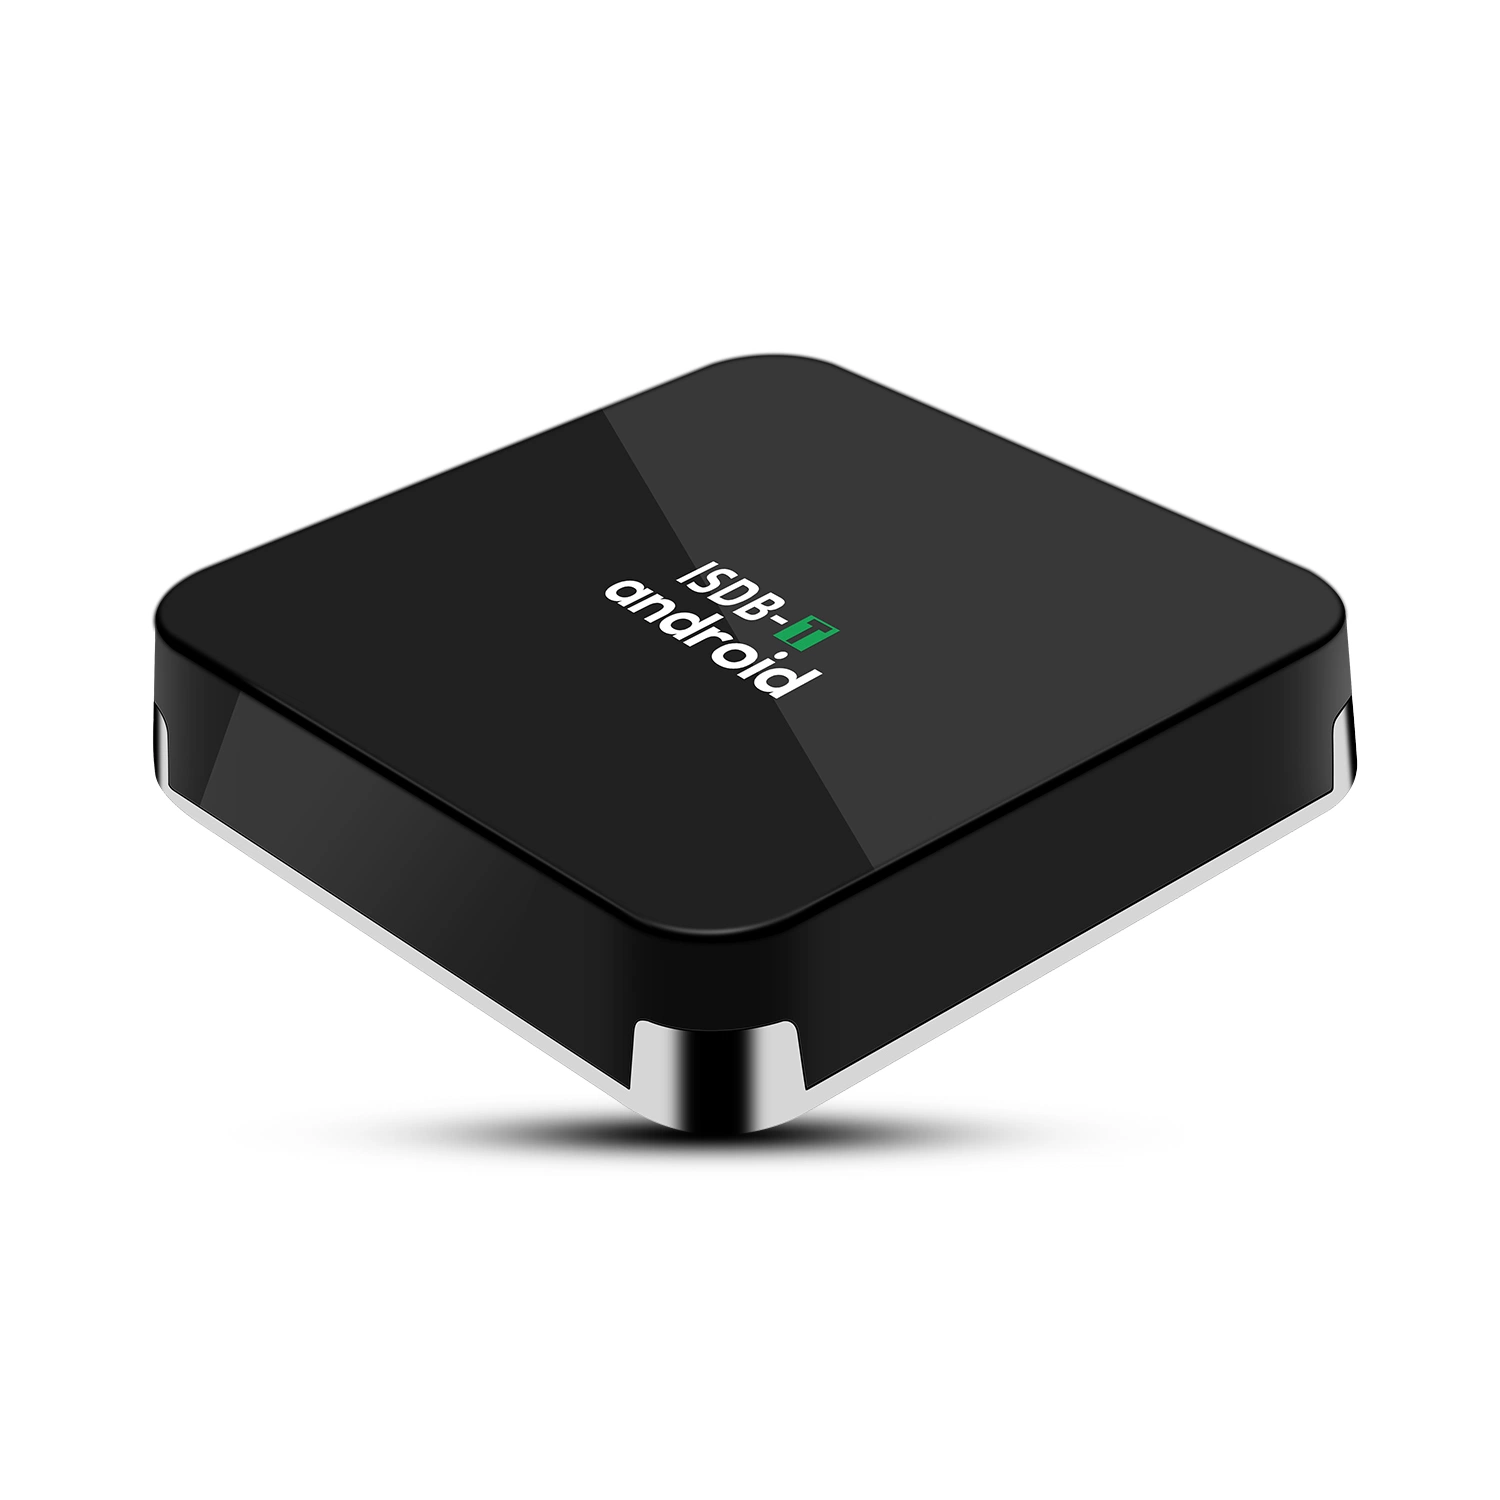 Android TV Box ISDB-T IPTV receptor el receptor de televisión inalámbrica